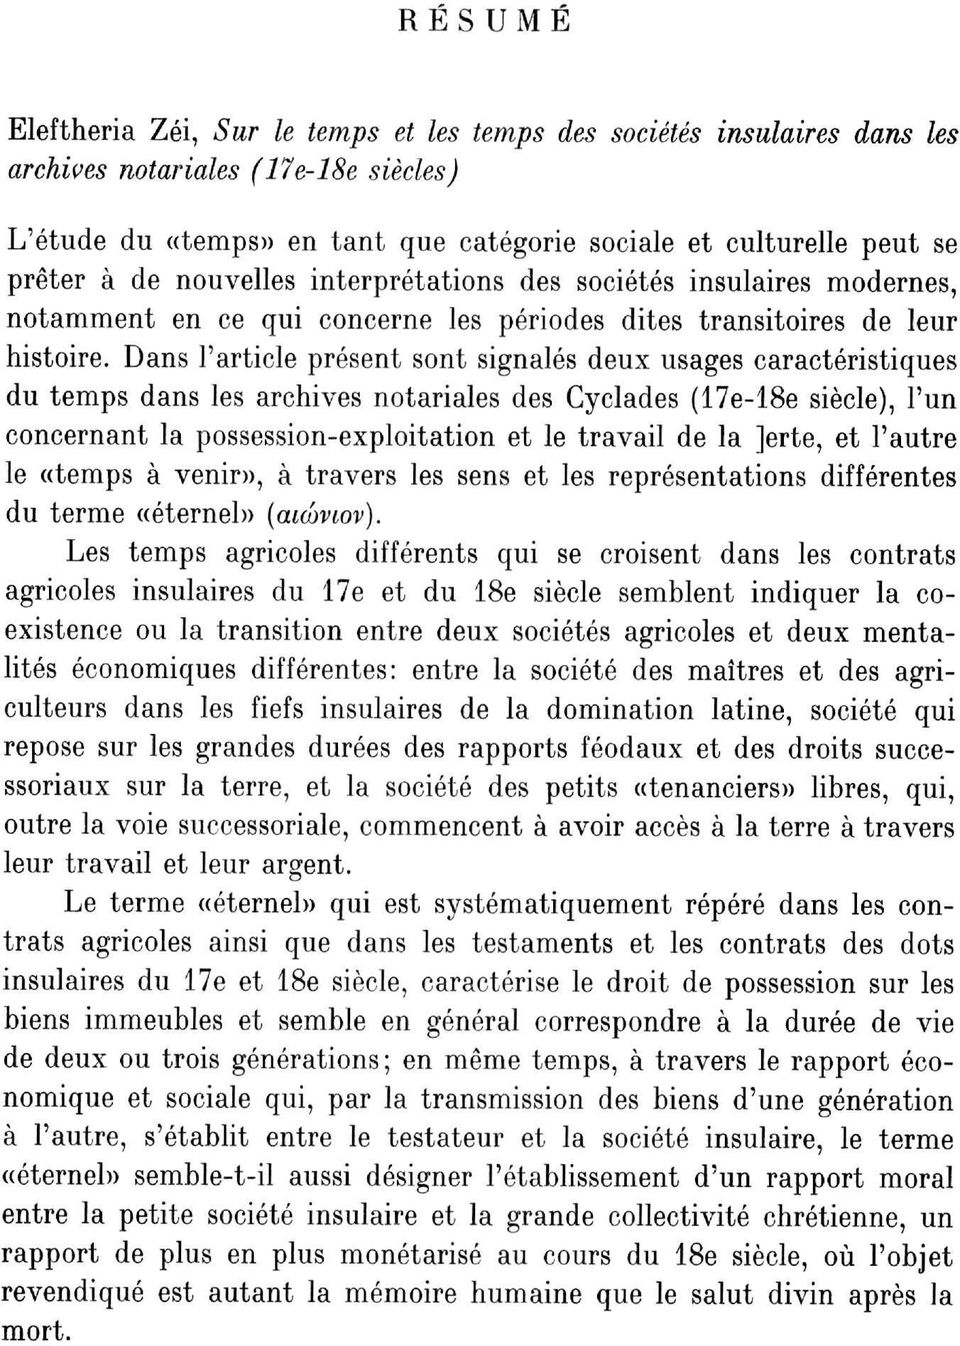 Dans l'article présent sont signalés deux usages caractéristiques du temps dans les archives notariales des Cyclades (17e-18e siècle), l'un concernant la possession-exploitation et le travail de la